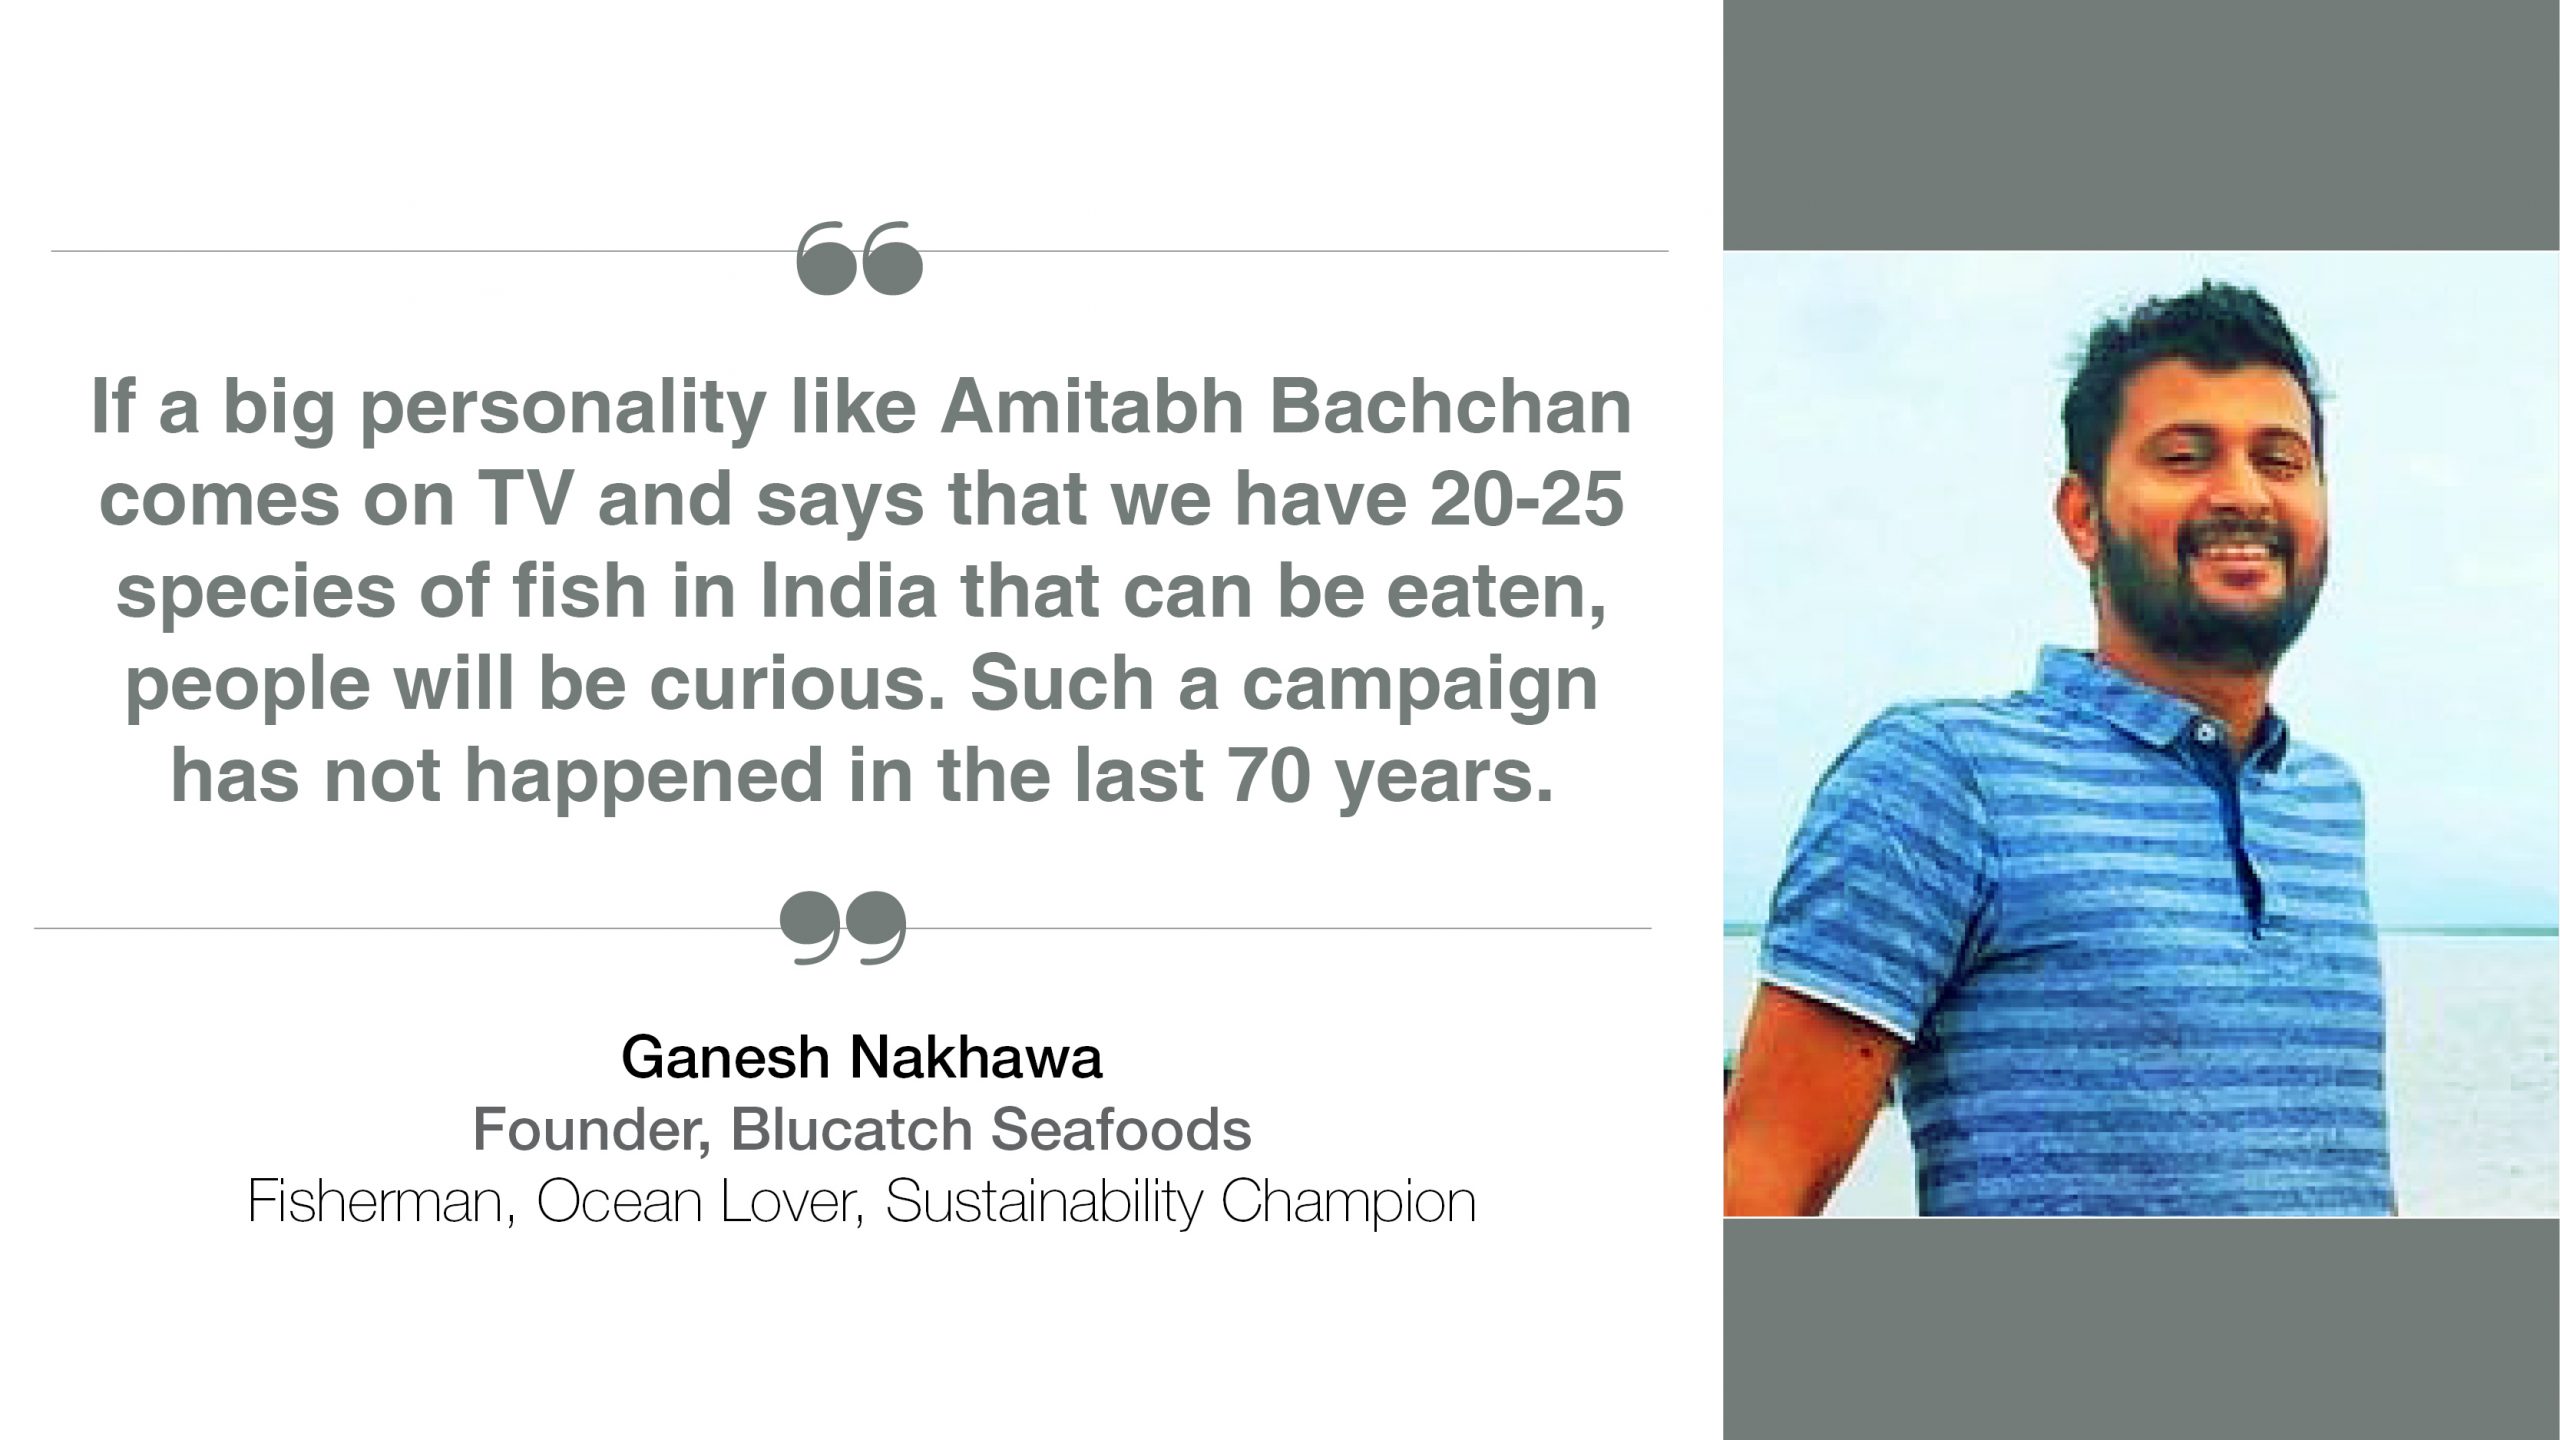 Ganesh Nakhawa